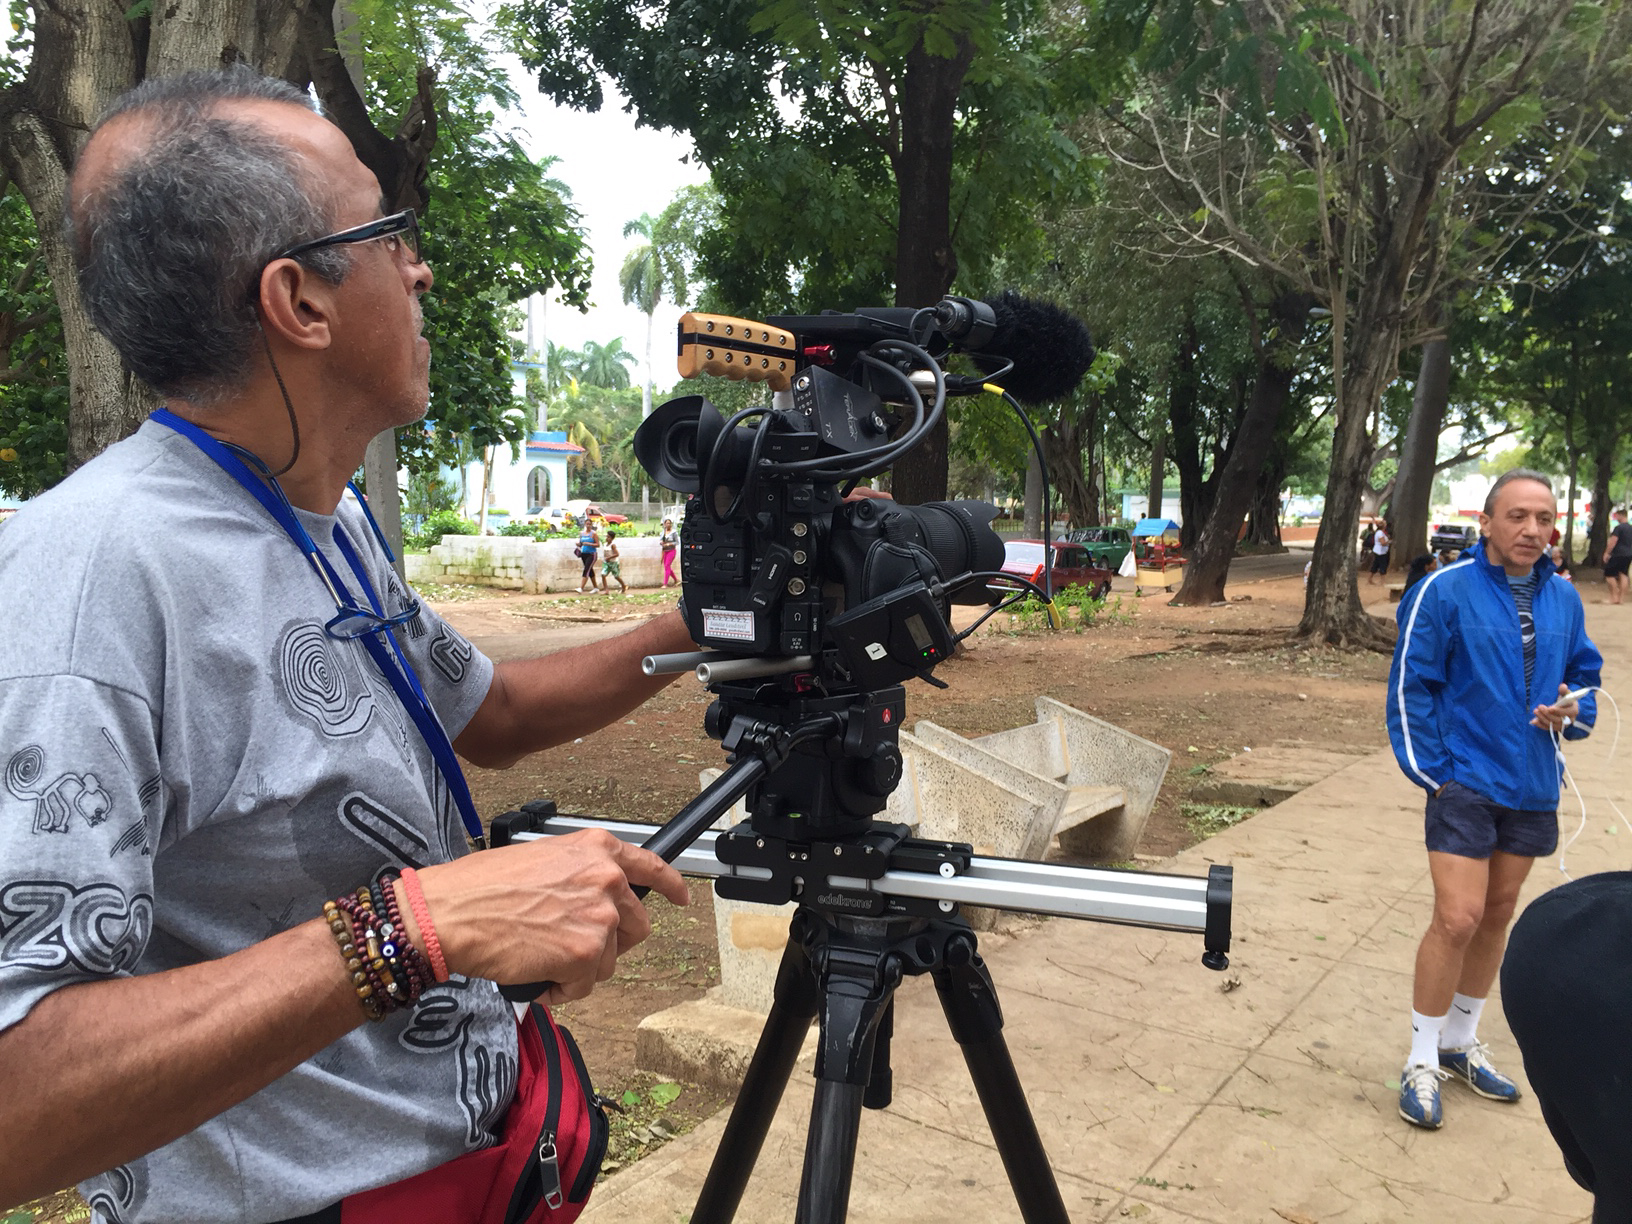  CUBA- The production team filmed an interview with a cuban citizen, Marco Gentili, at one of the few Wi-Fi access locations in Cuba.

El equipo de producción filmó una entrevista con un ciudadano cubano, Marco Gentil, en uno de los pocos lugares de 